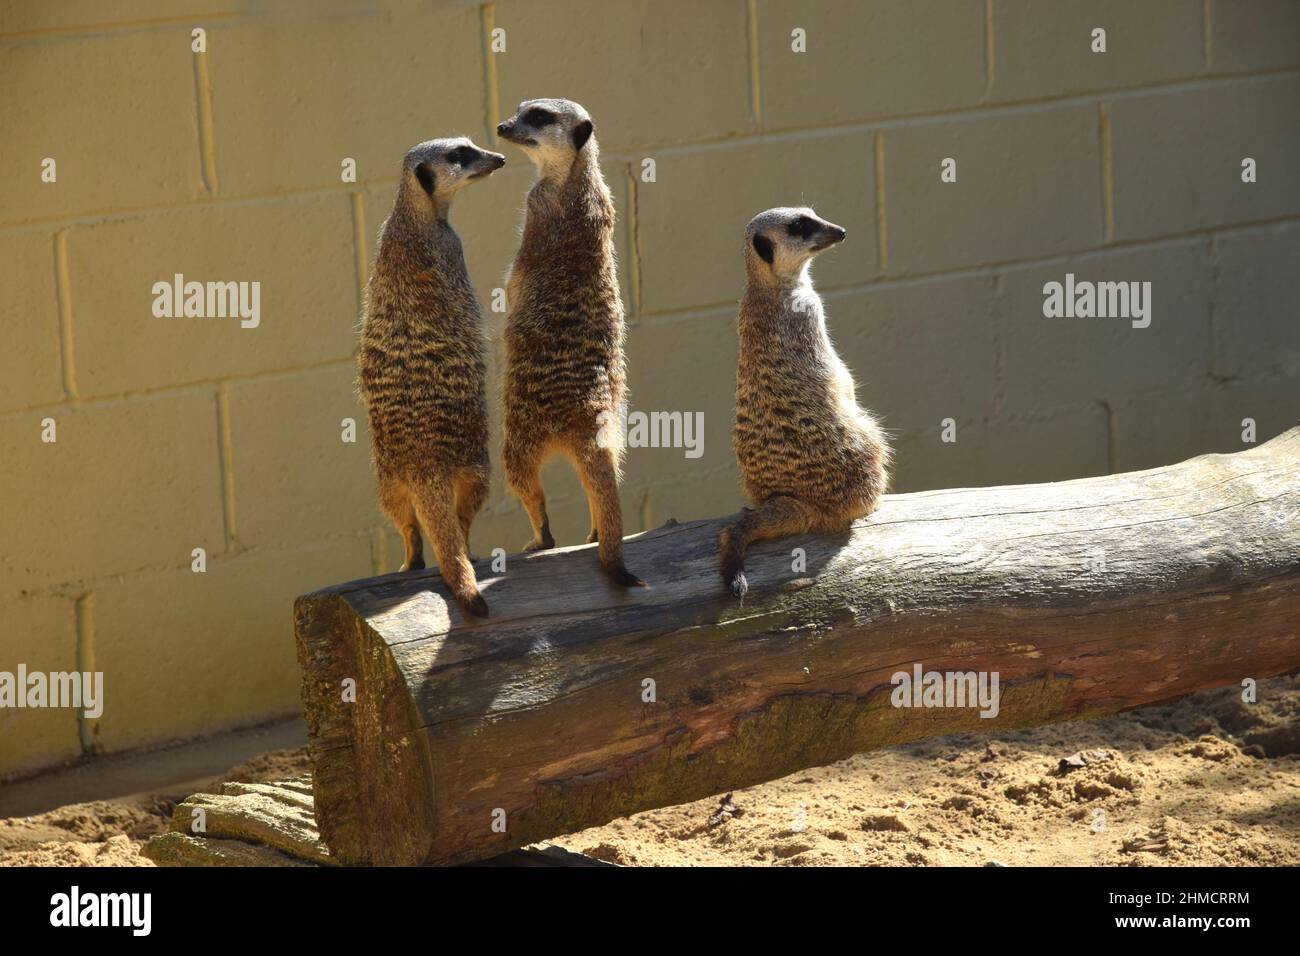 trois meerkats sur le belvédère, angleterre Banque D'Images